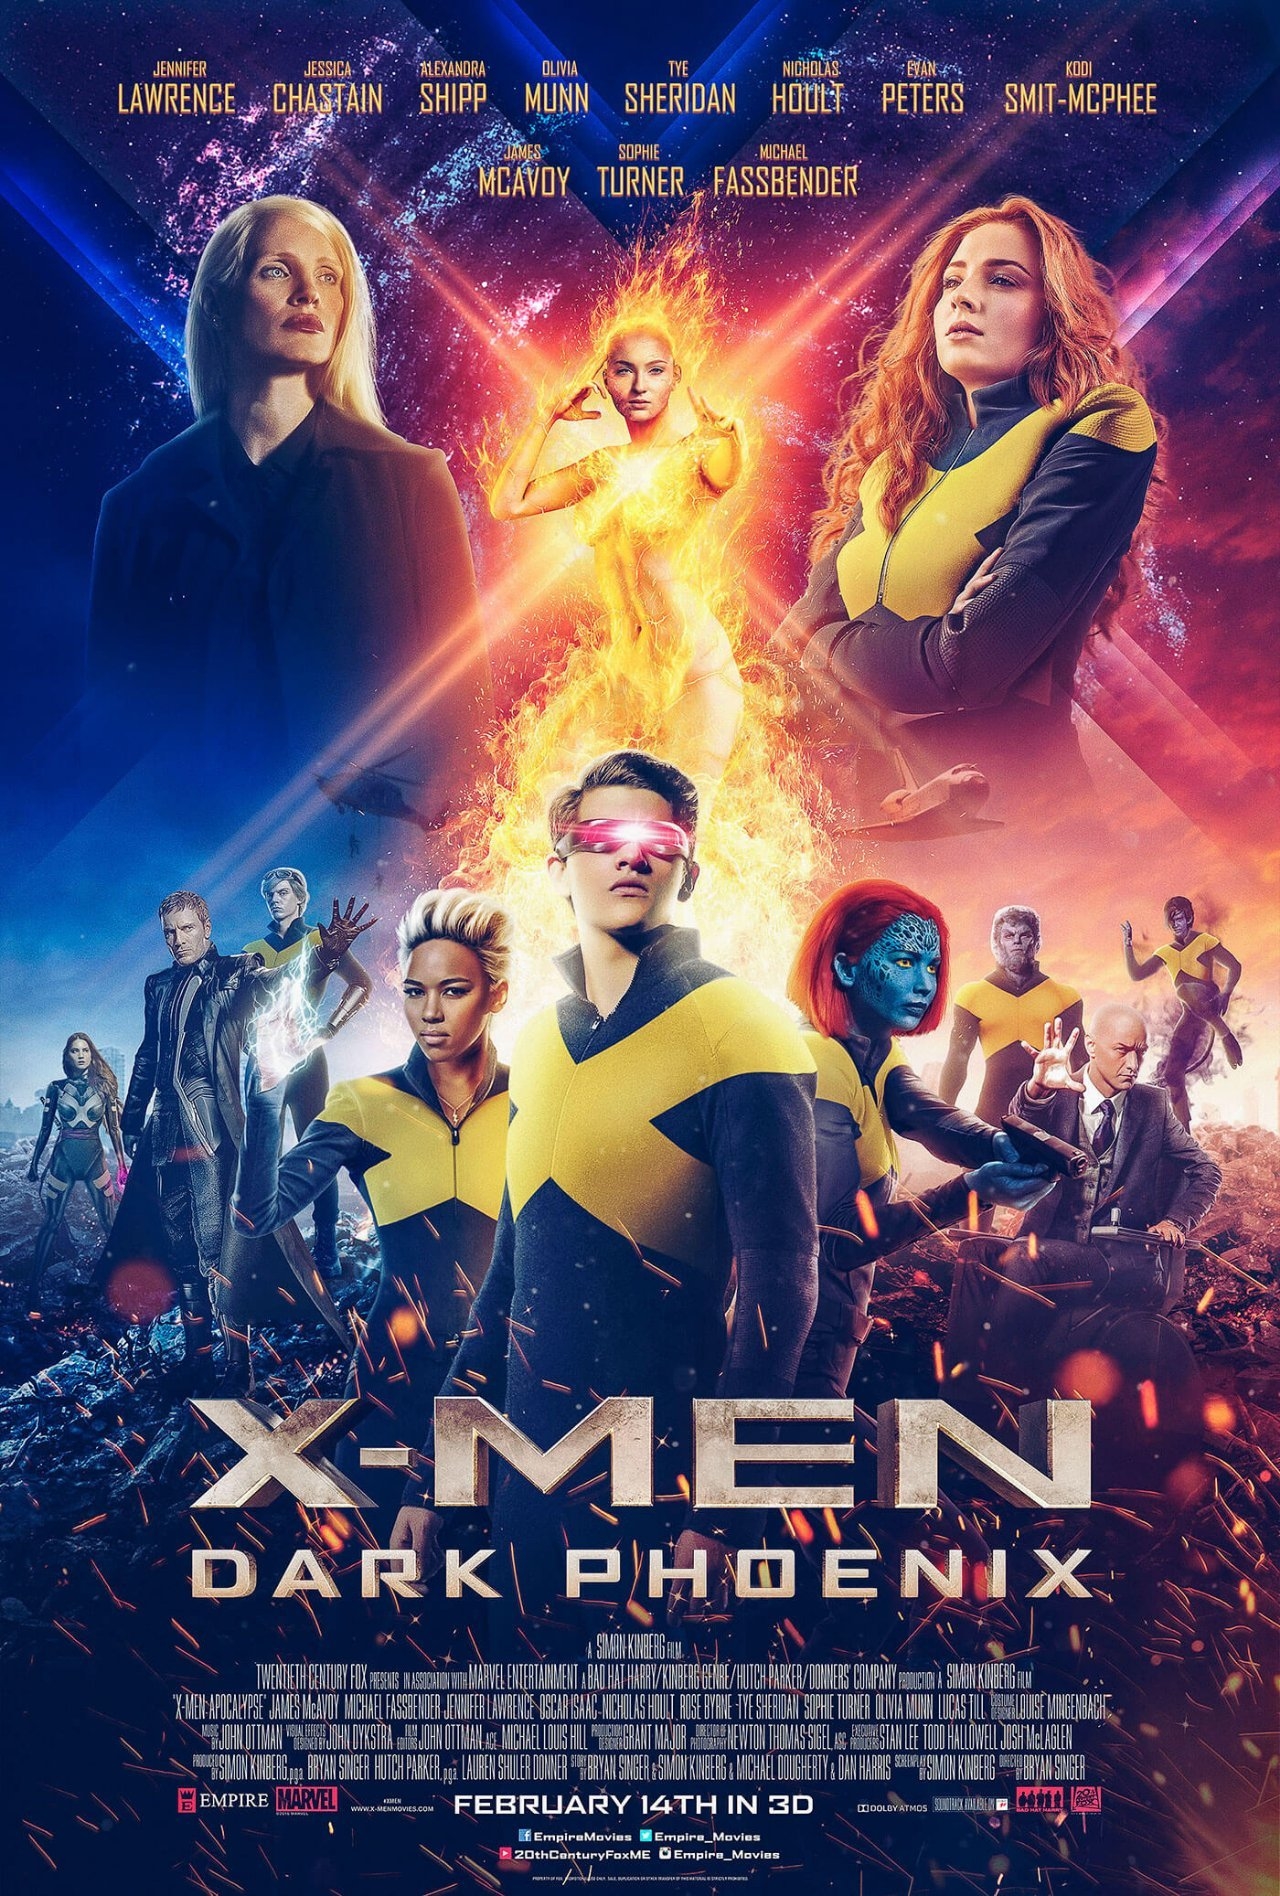 Bên cạnh đó, tài khoản này cũng chia sẻ hình ảnh poster Dark Phoenix do fan tự thiết kế.